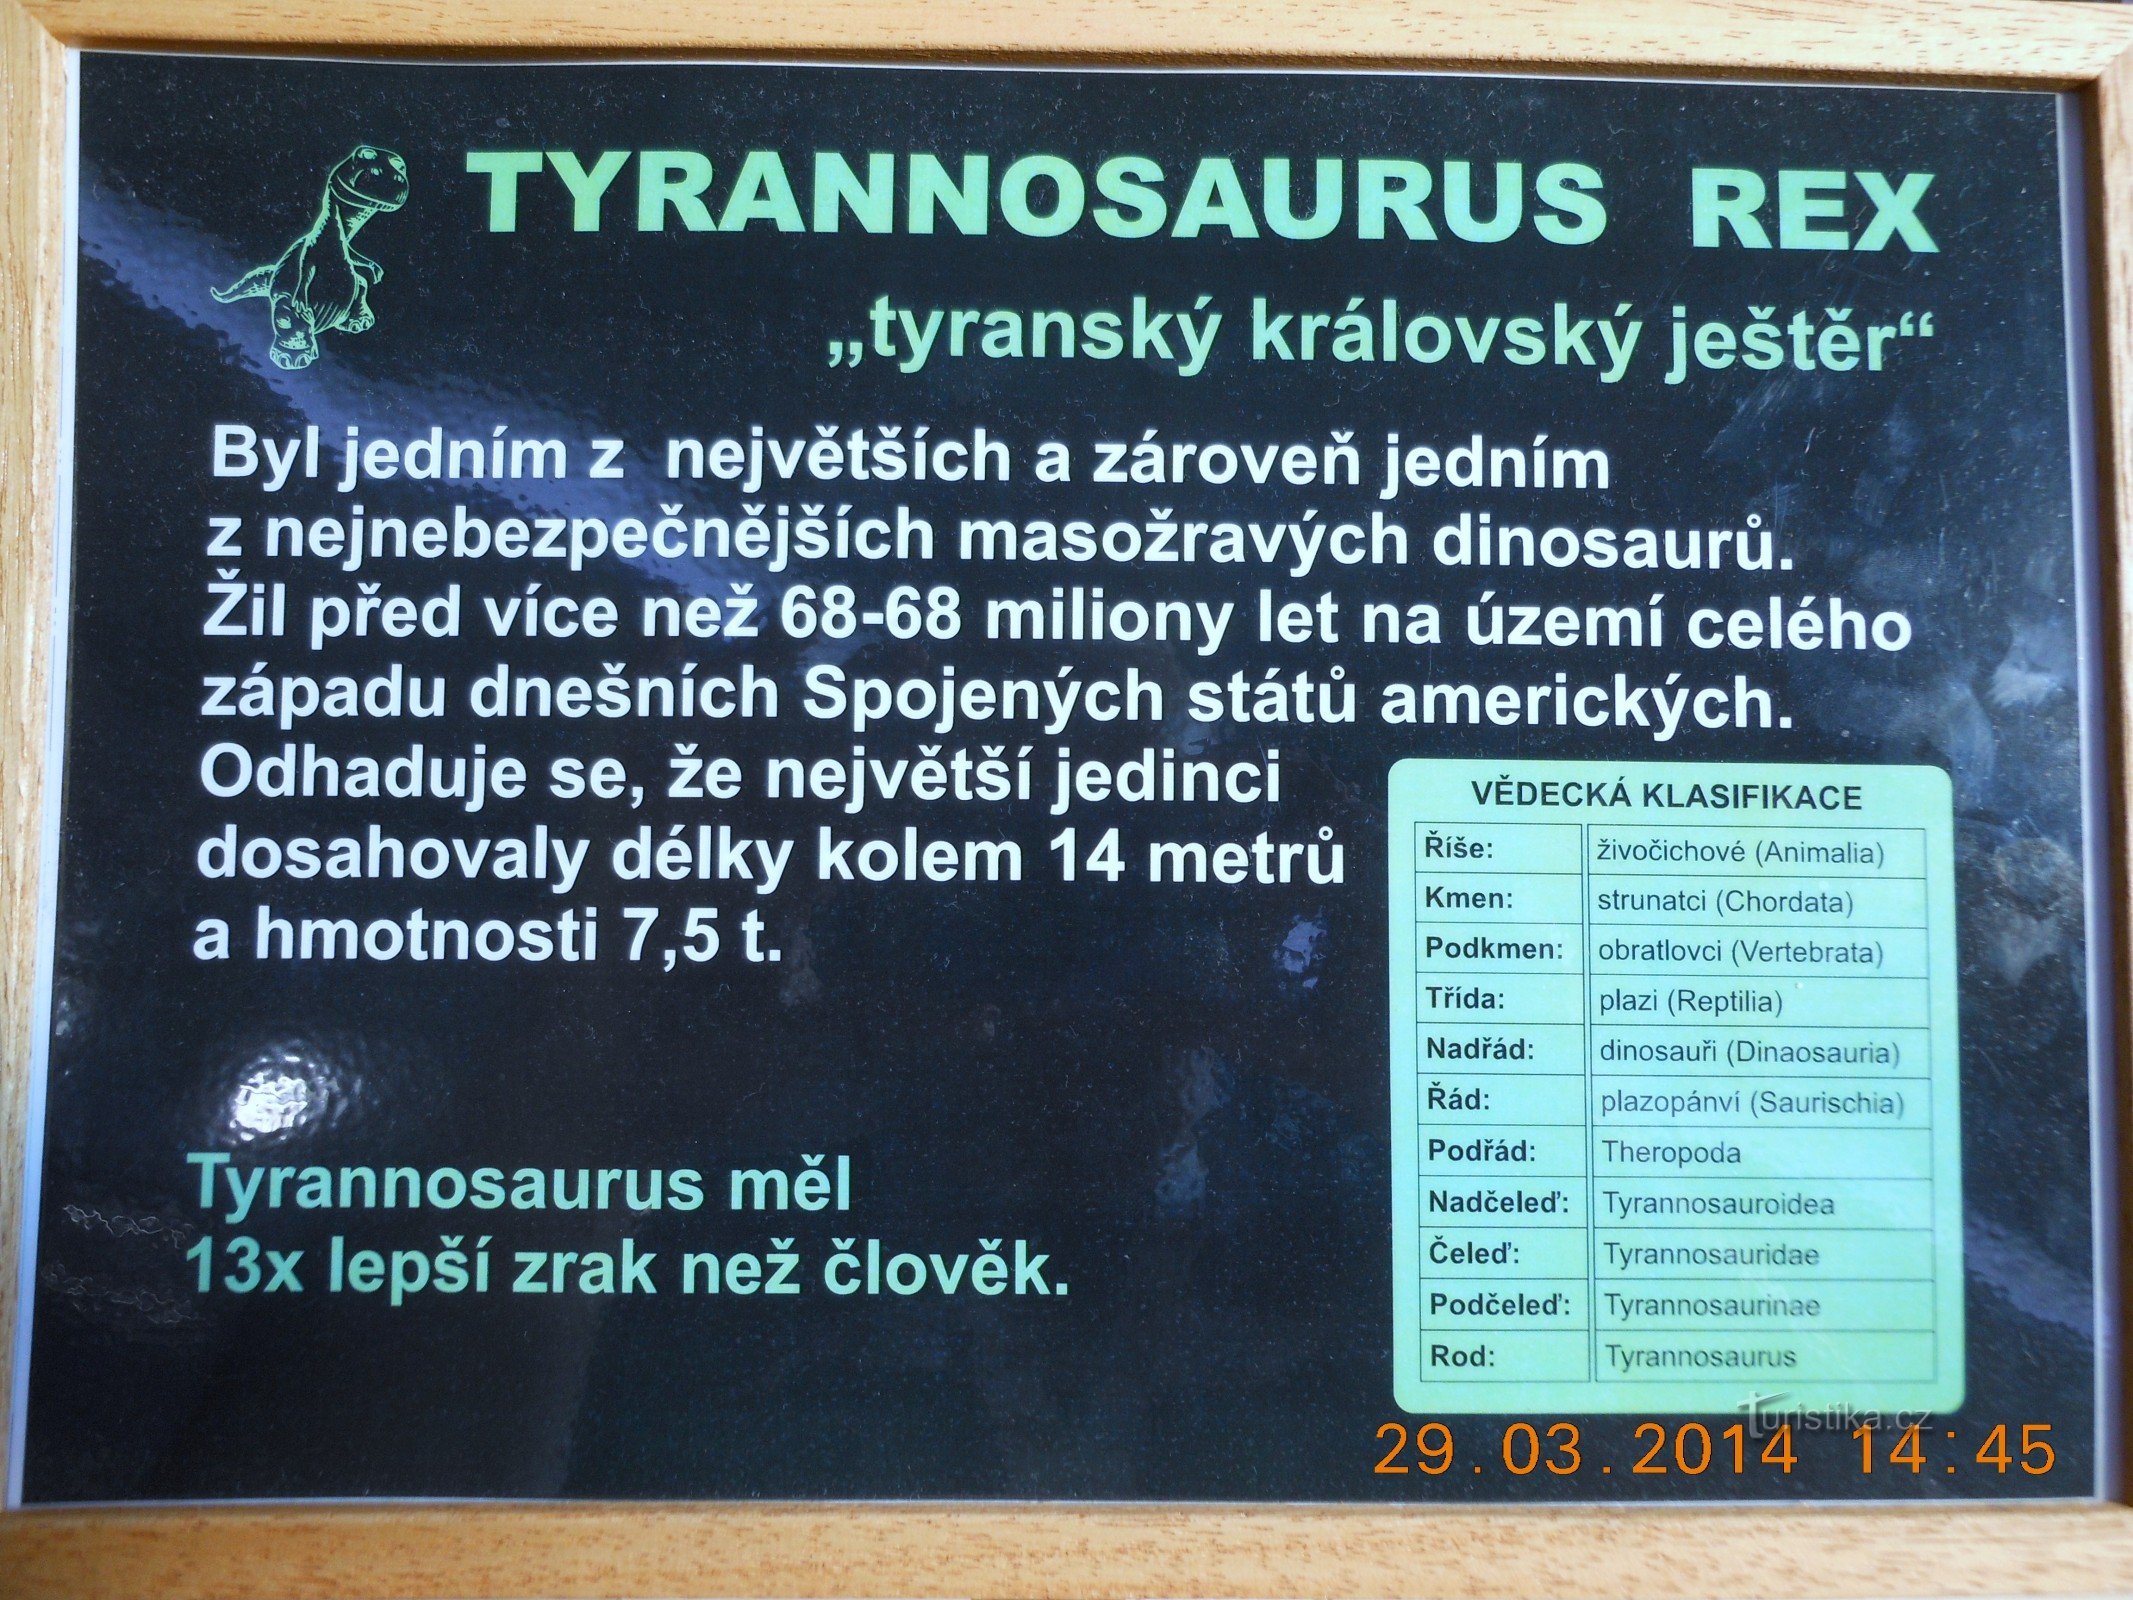 Mostra sui giganti della preistoria - Varyáda Karlovy Vary